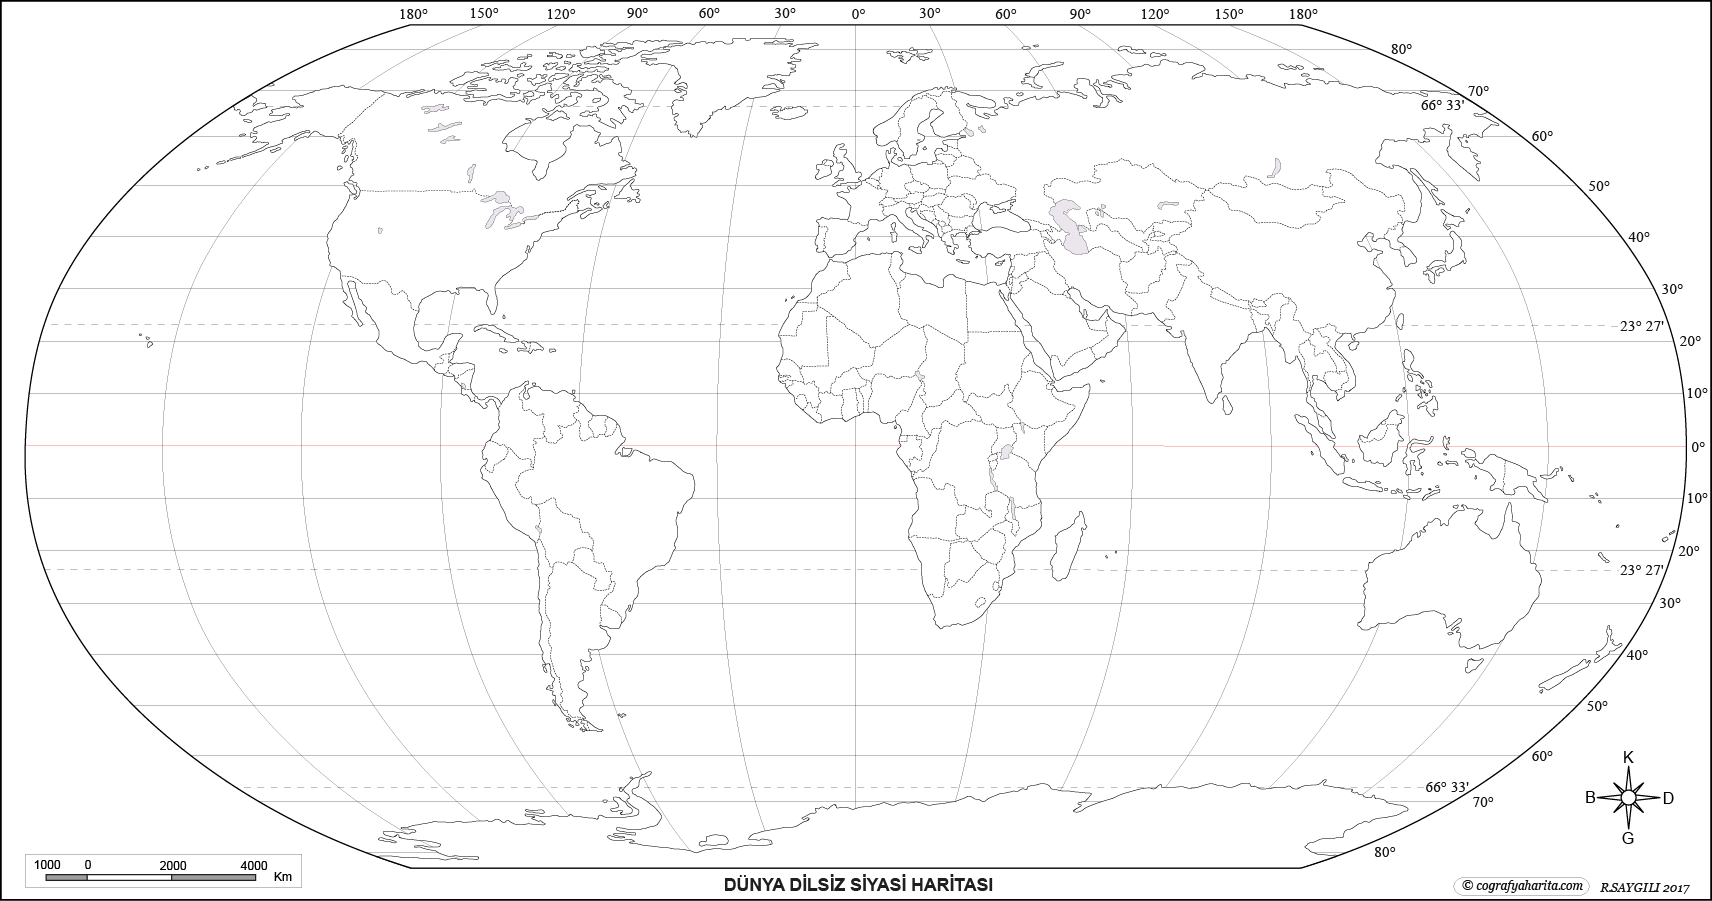 Dünya Dilsiz Haritası Sınırları - WRHS